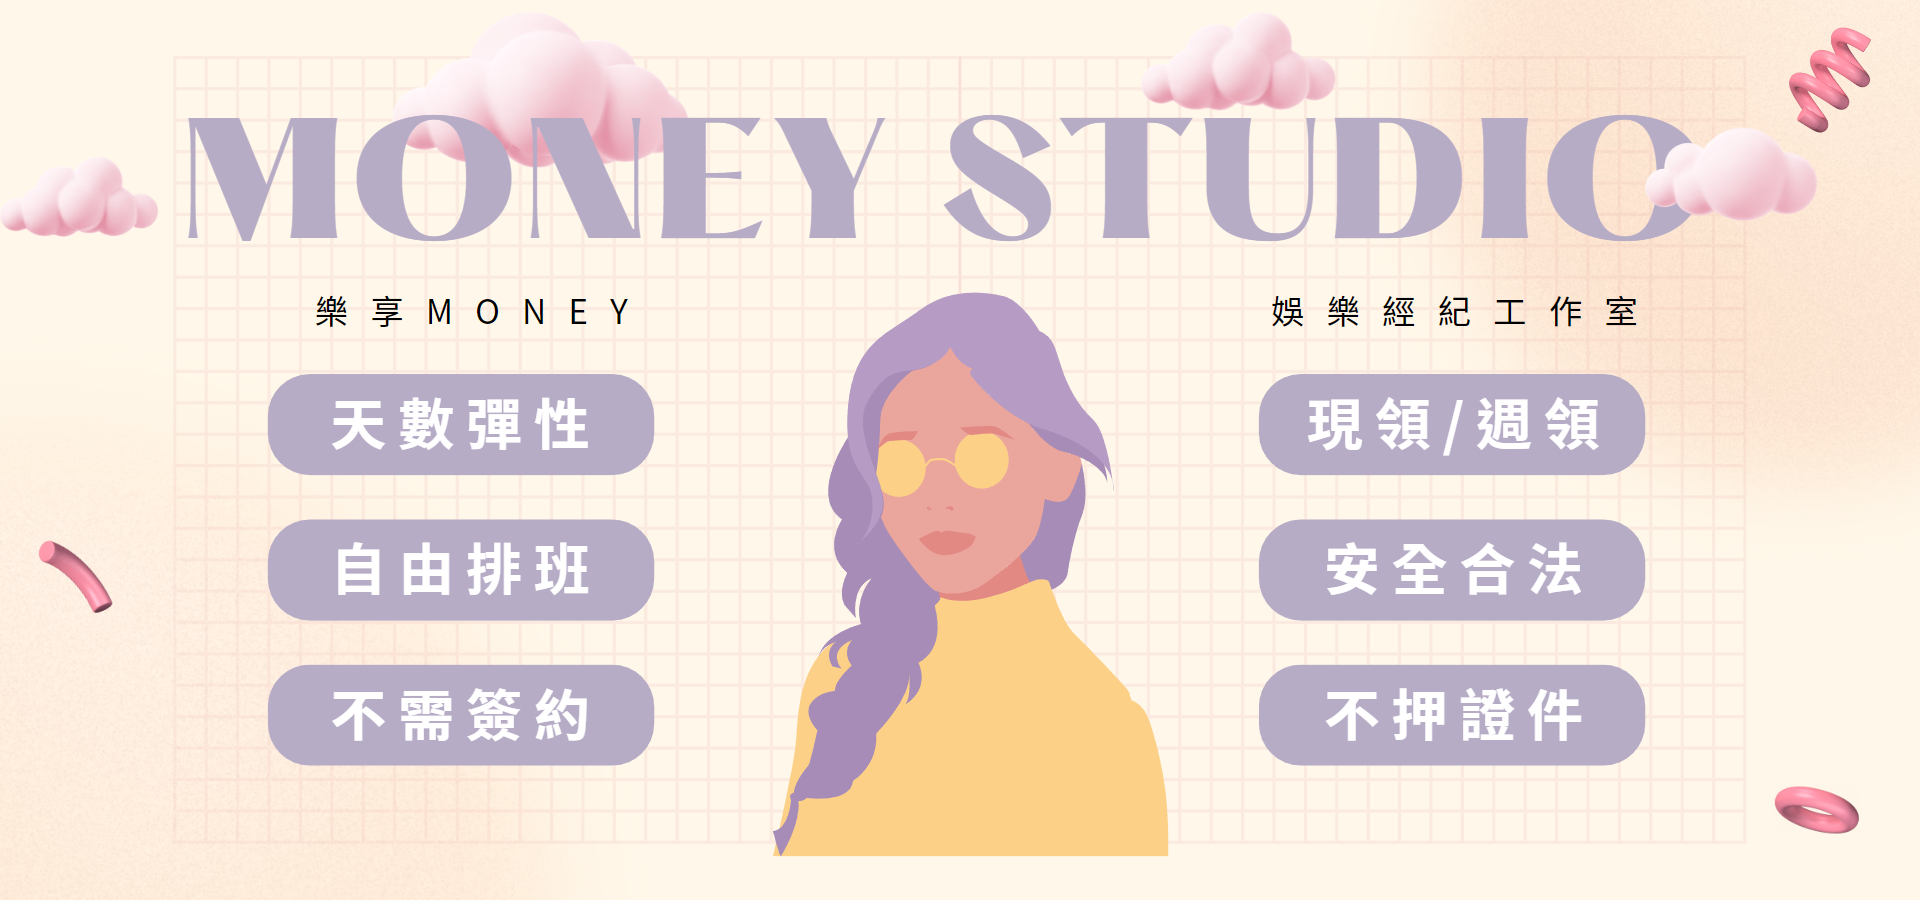 money studio 2 pc